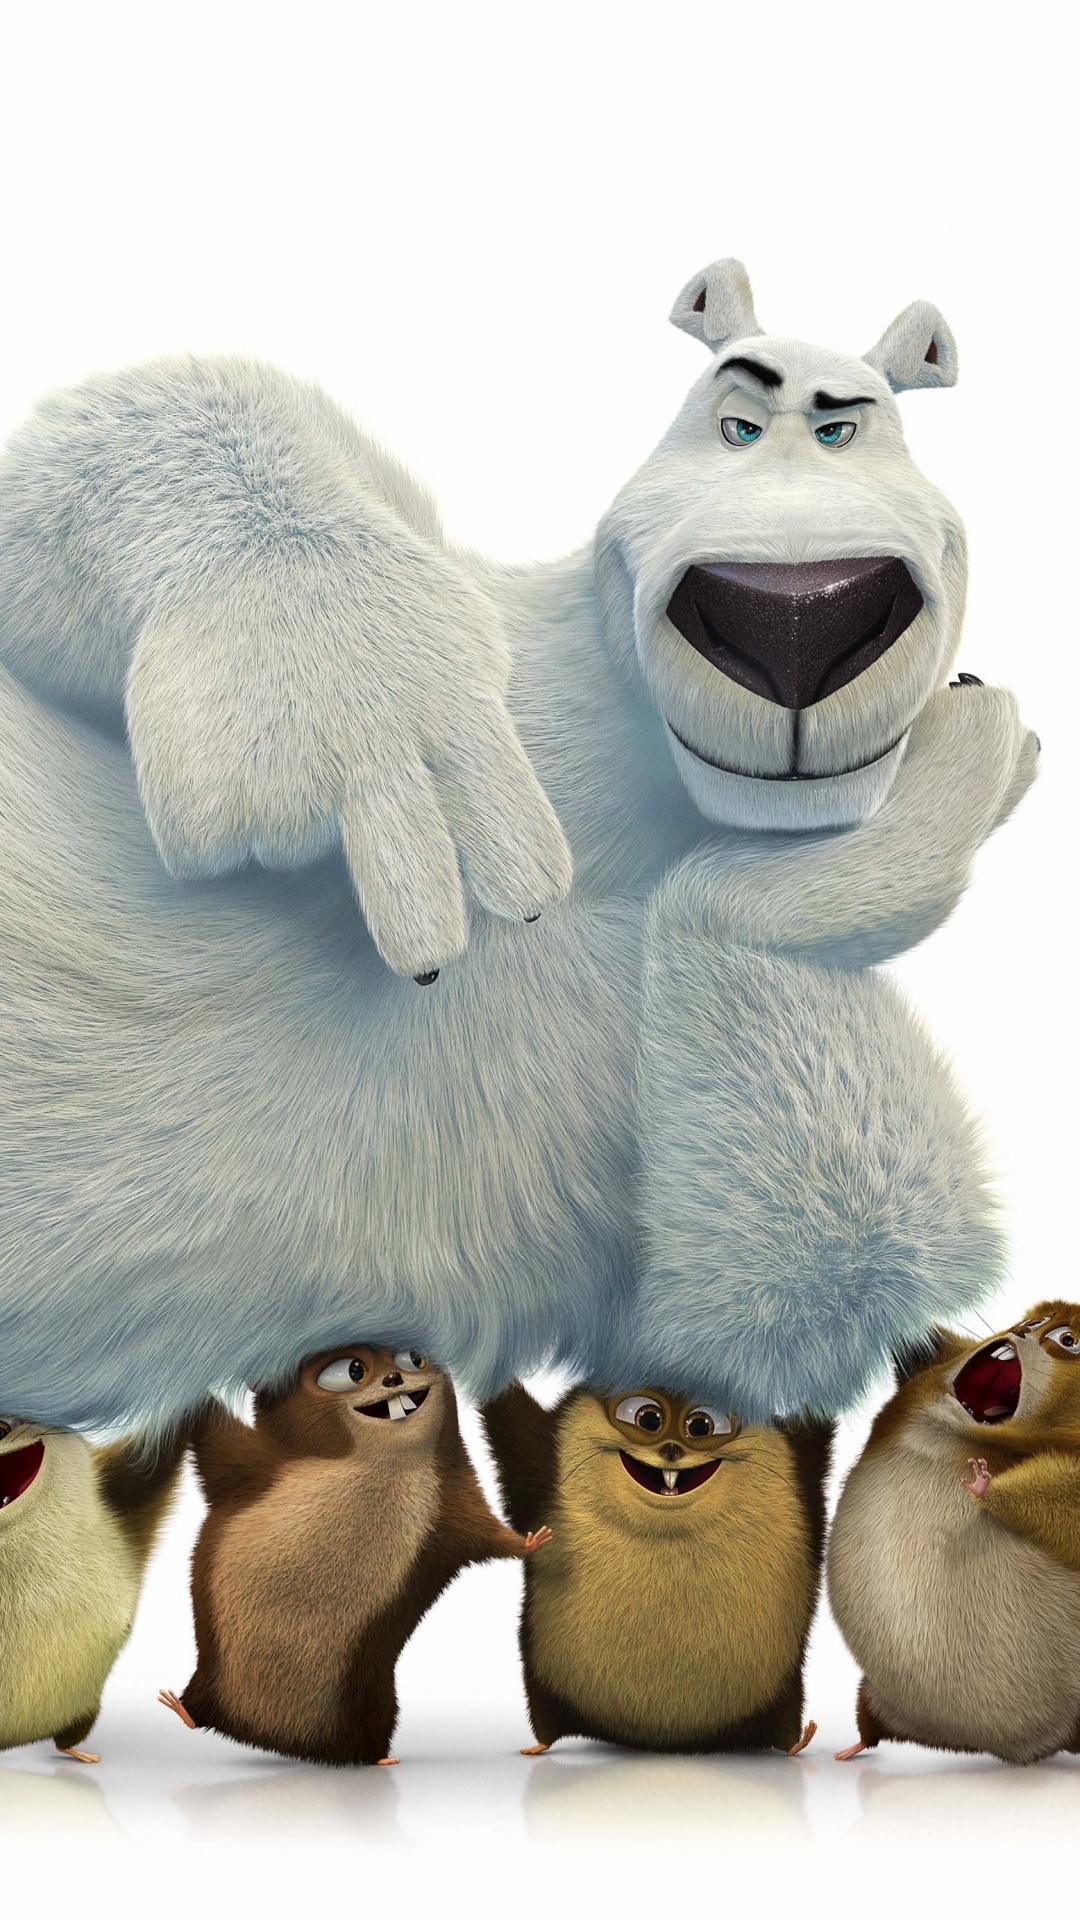 北极熊, 毛绒玩具, 动画, 毛绒, 电影 壁纸 1080x1920 允许